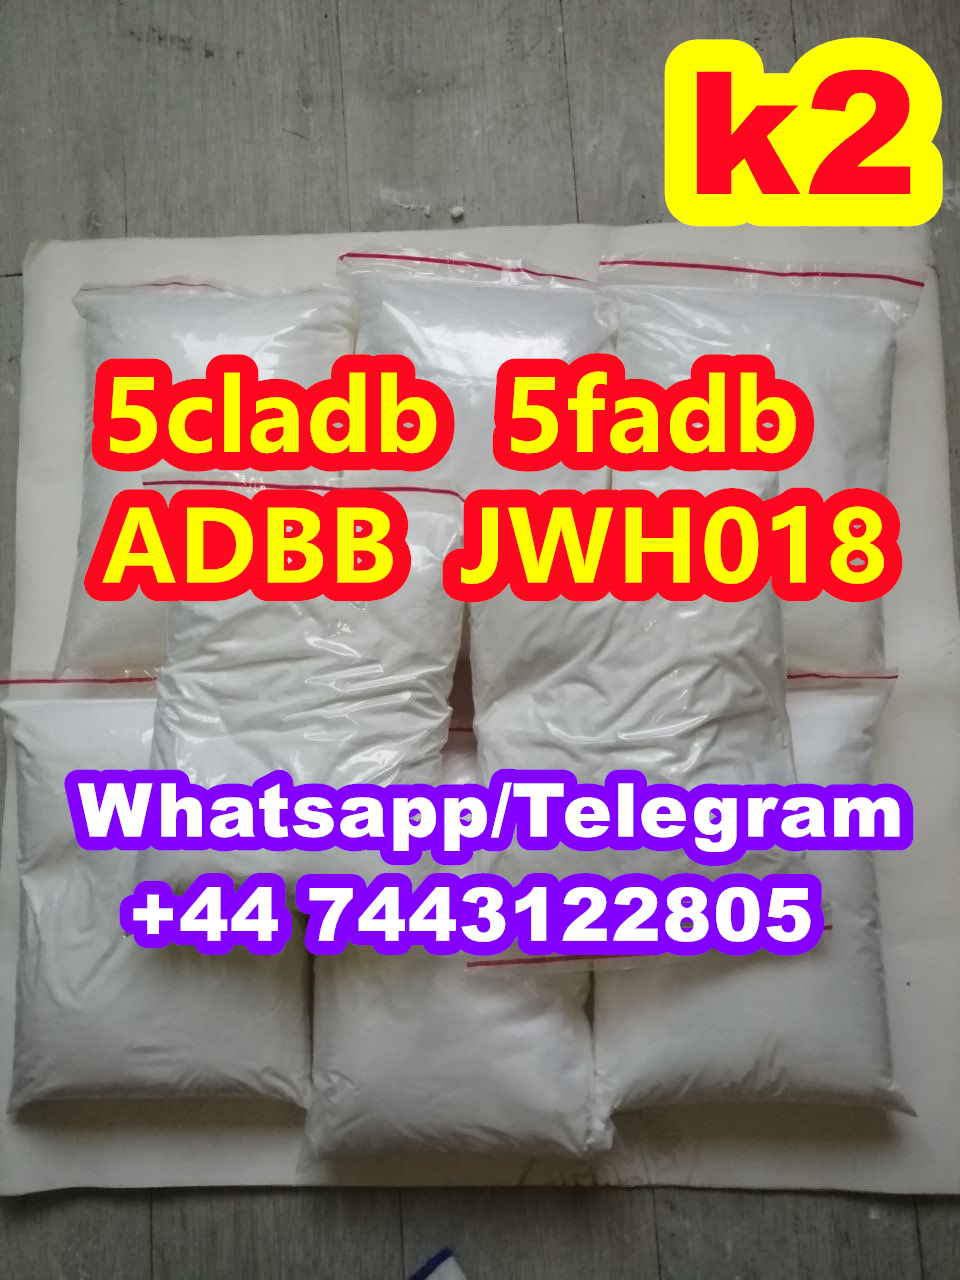 cannabinoids5cladb ADBB 5F-ADB 5cladb  jwh018 